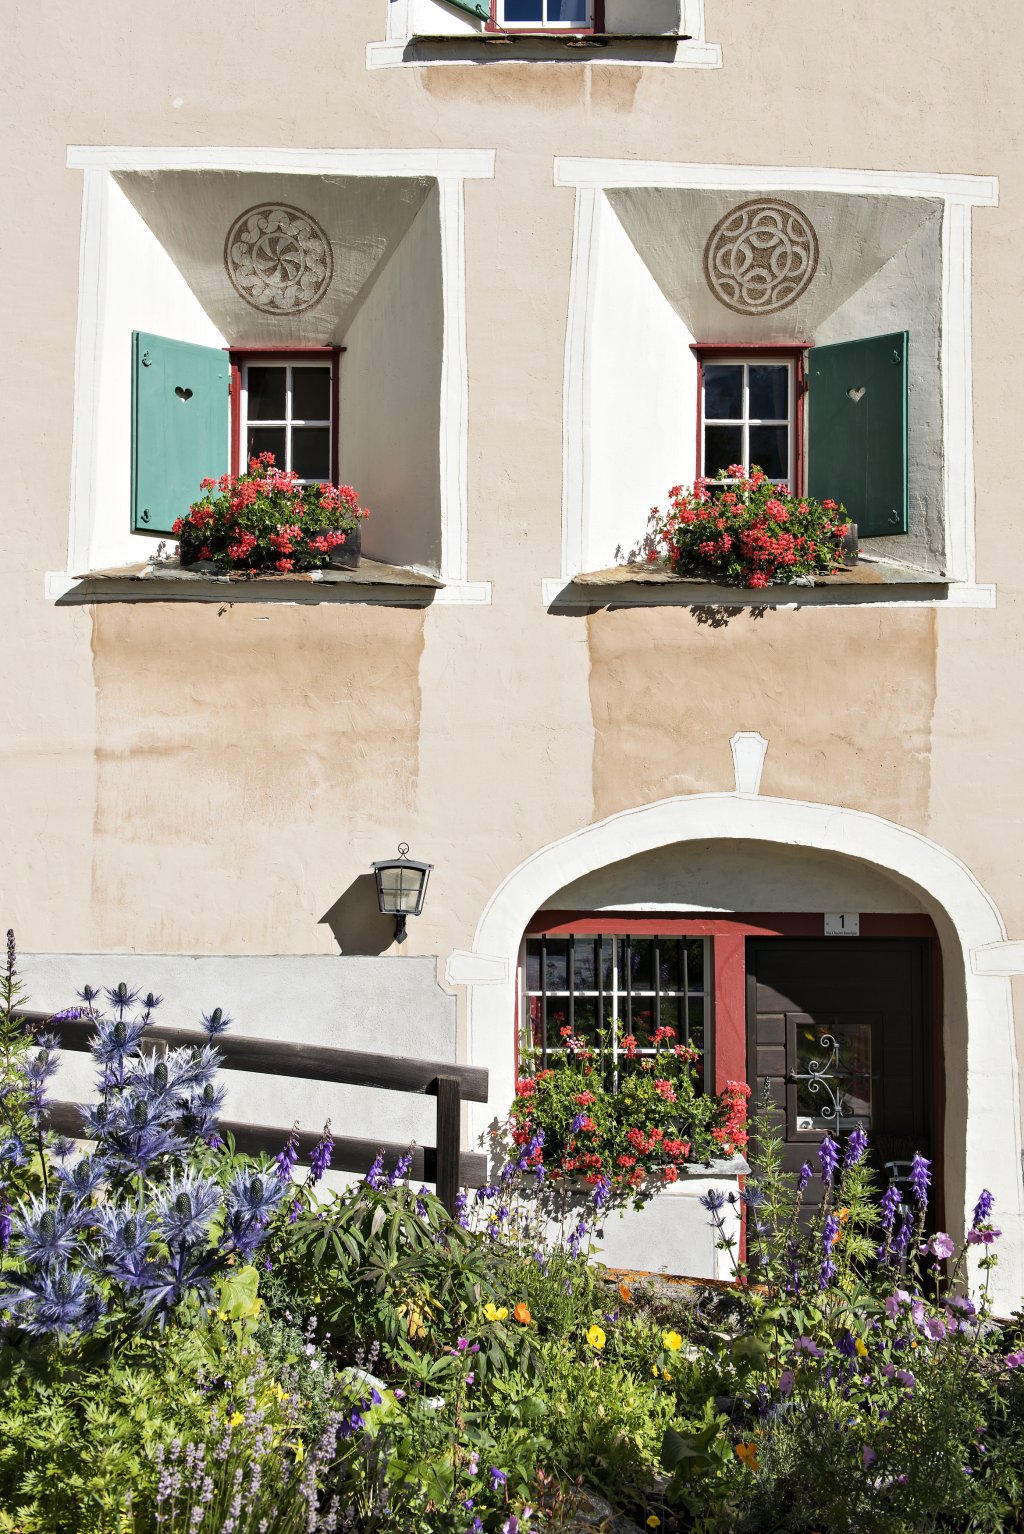 Engadinerhaus mit Sgrafito und Blumen.